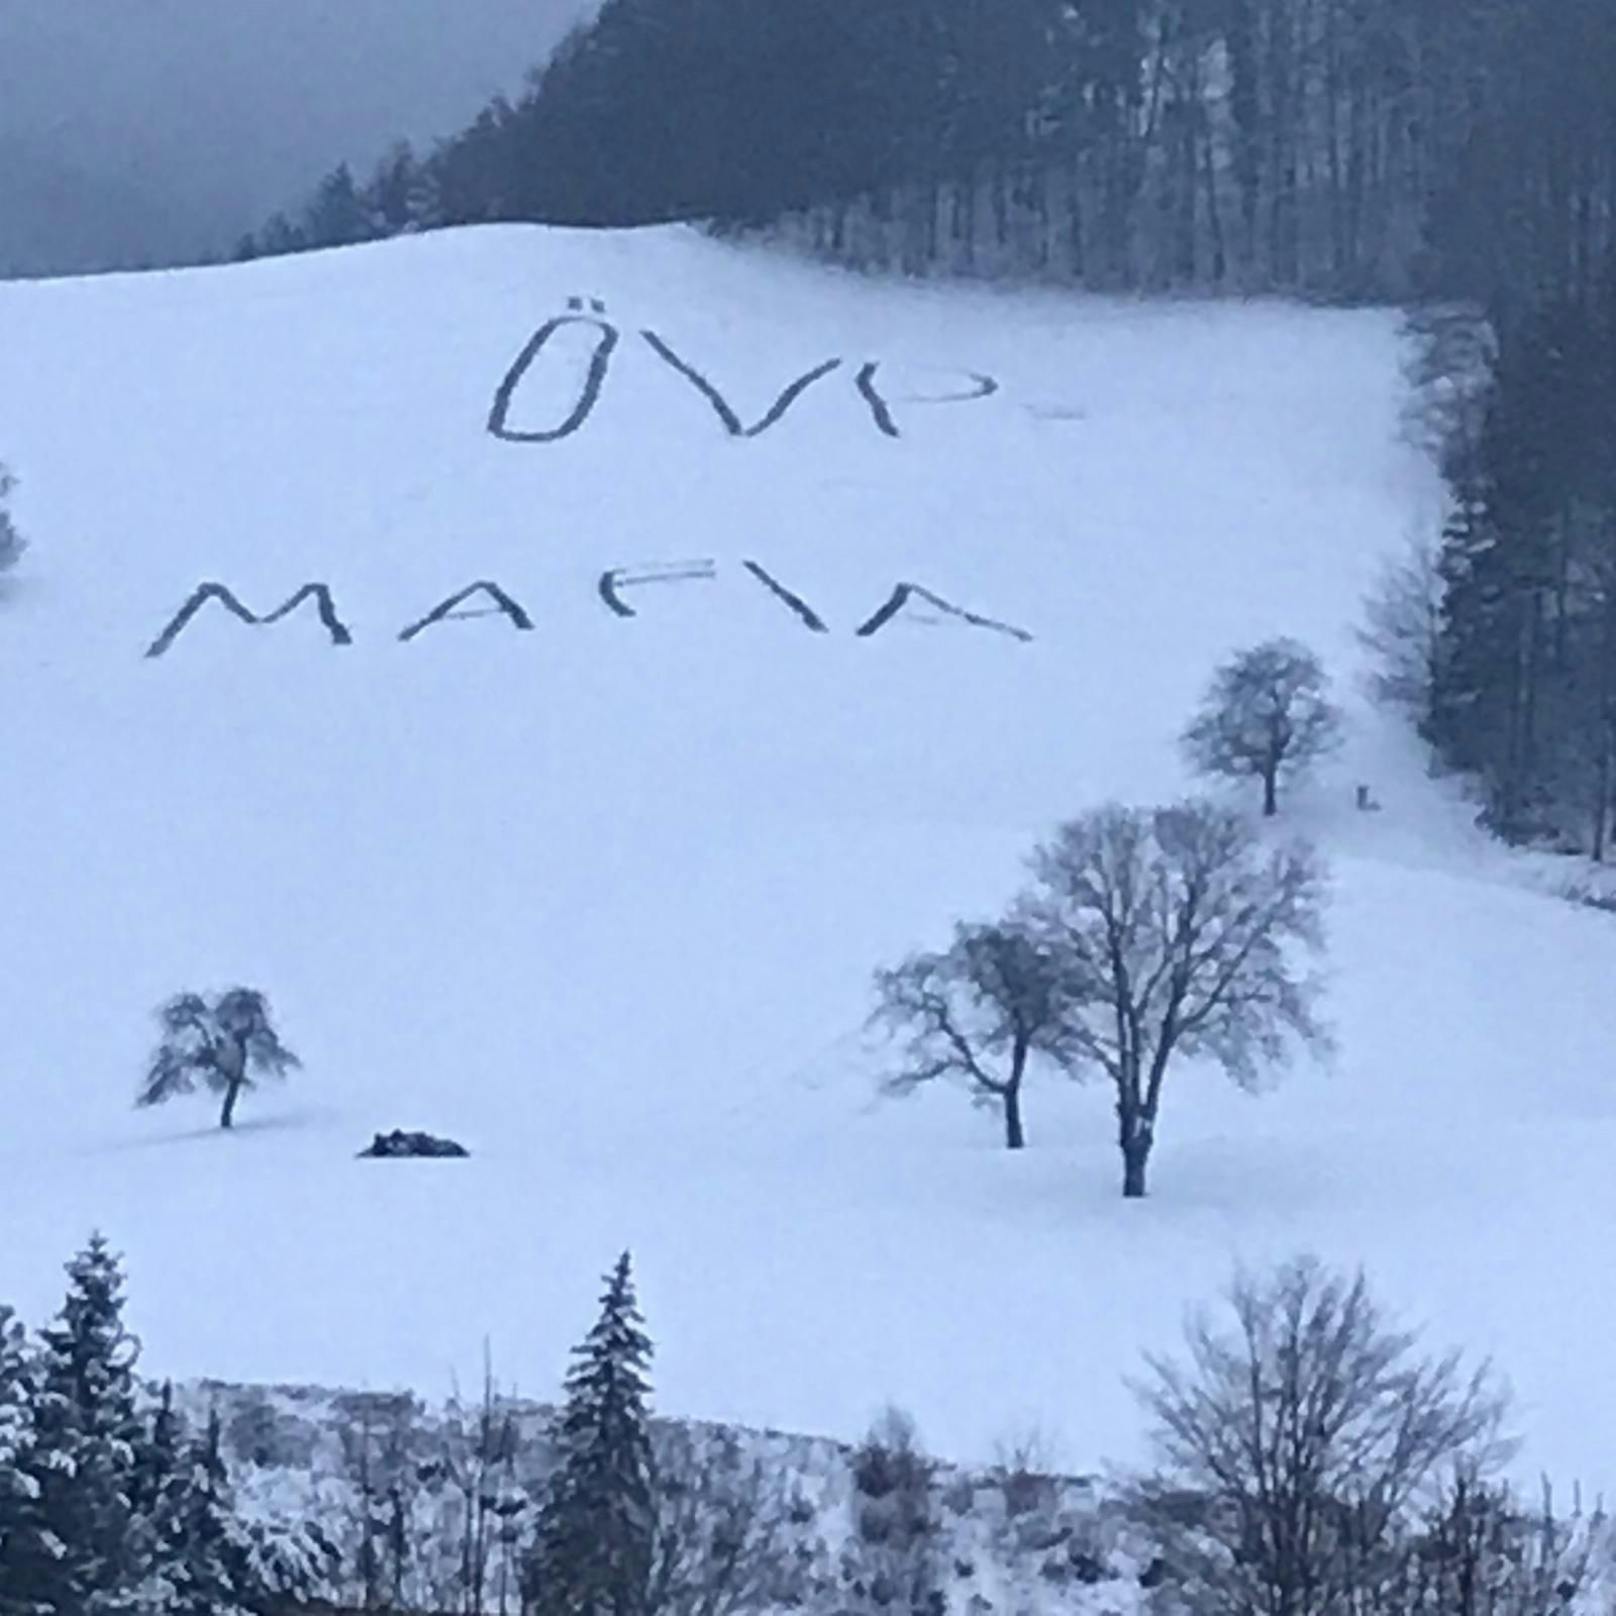 Anfang der Woche stampften Unbekannte im Bezirk Lilienfeld (NÖ) zwei kuriose Wörter in den Schnee.